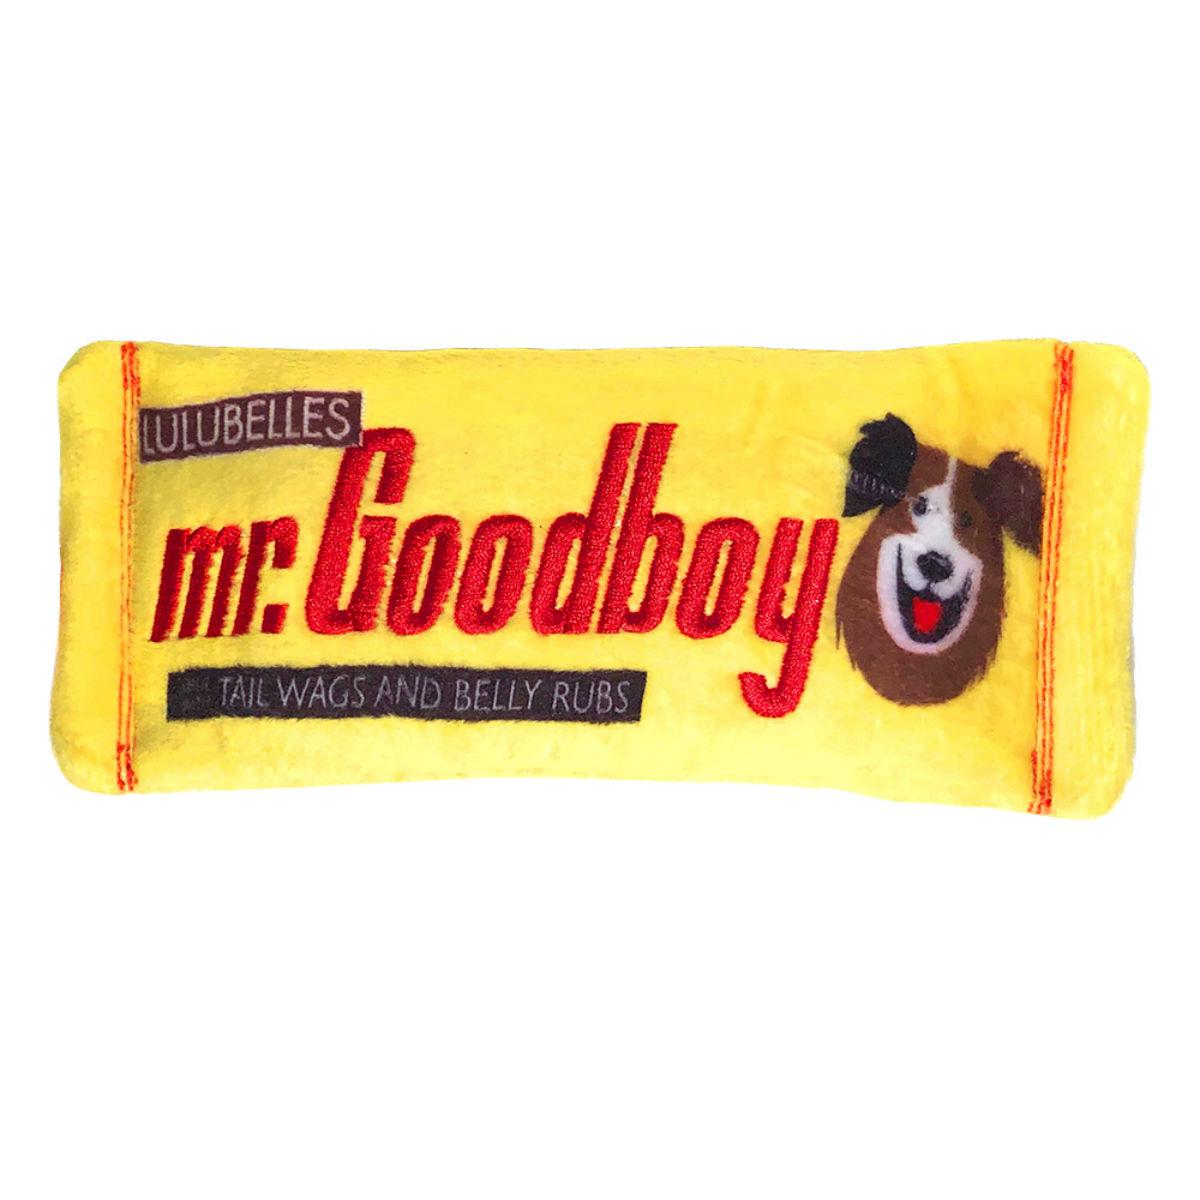 Lulubelles Power Plush Dog Toy - Mr. Goodboy